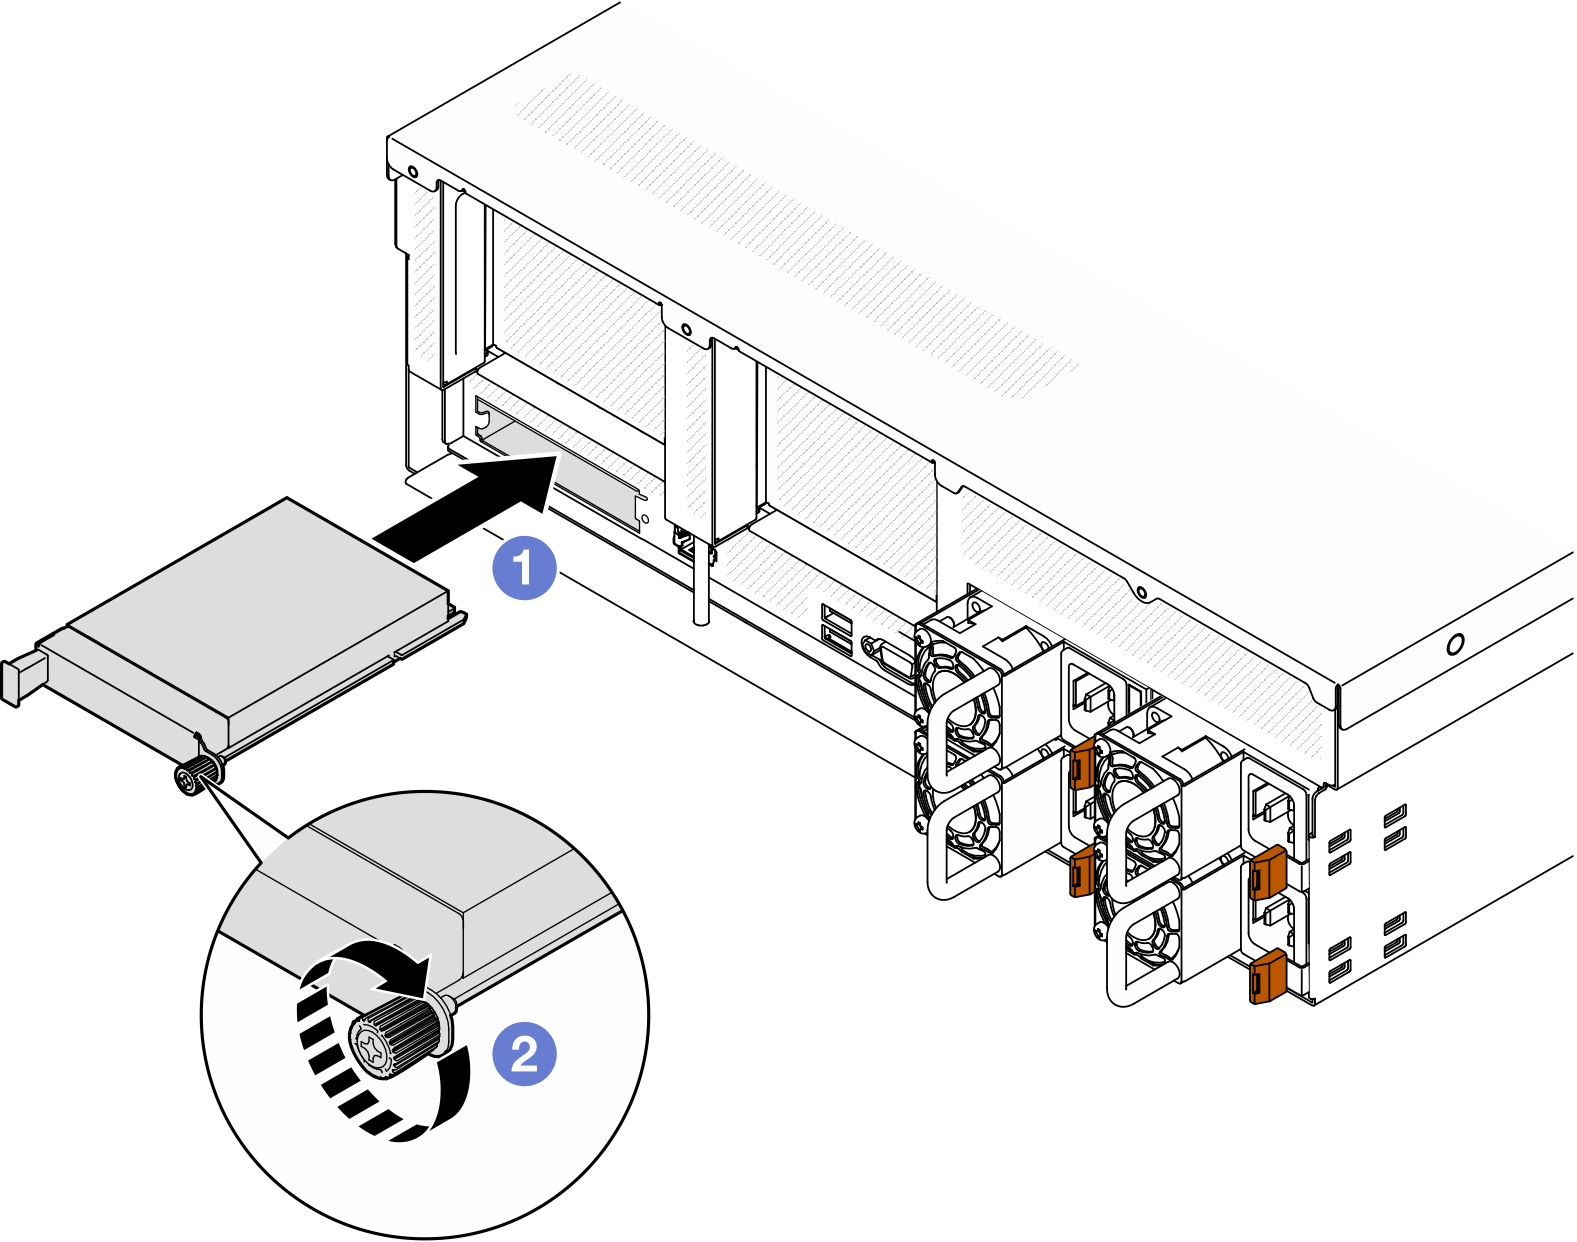 OCP module installation